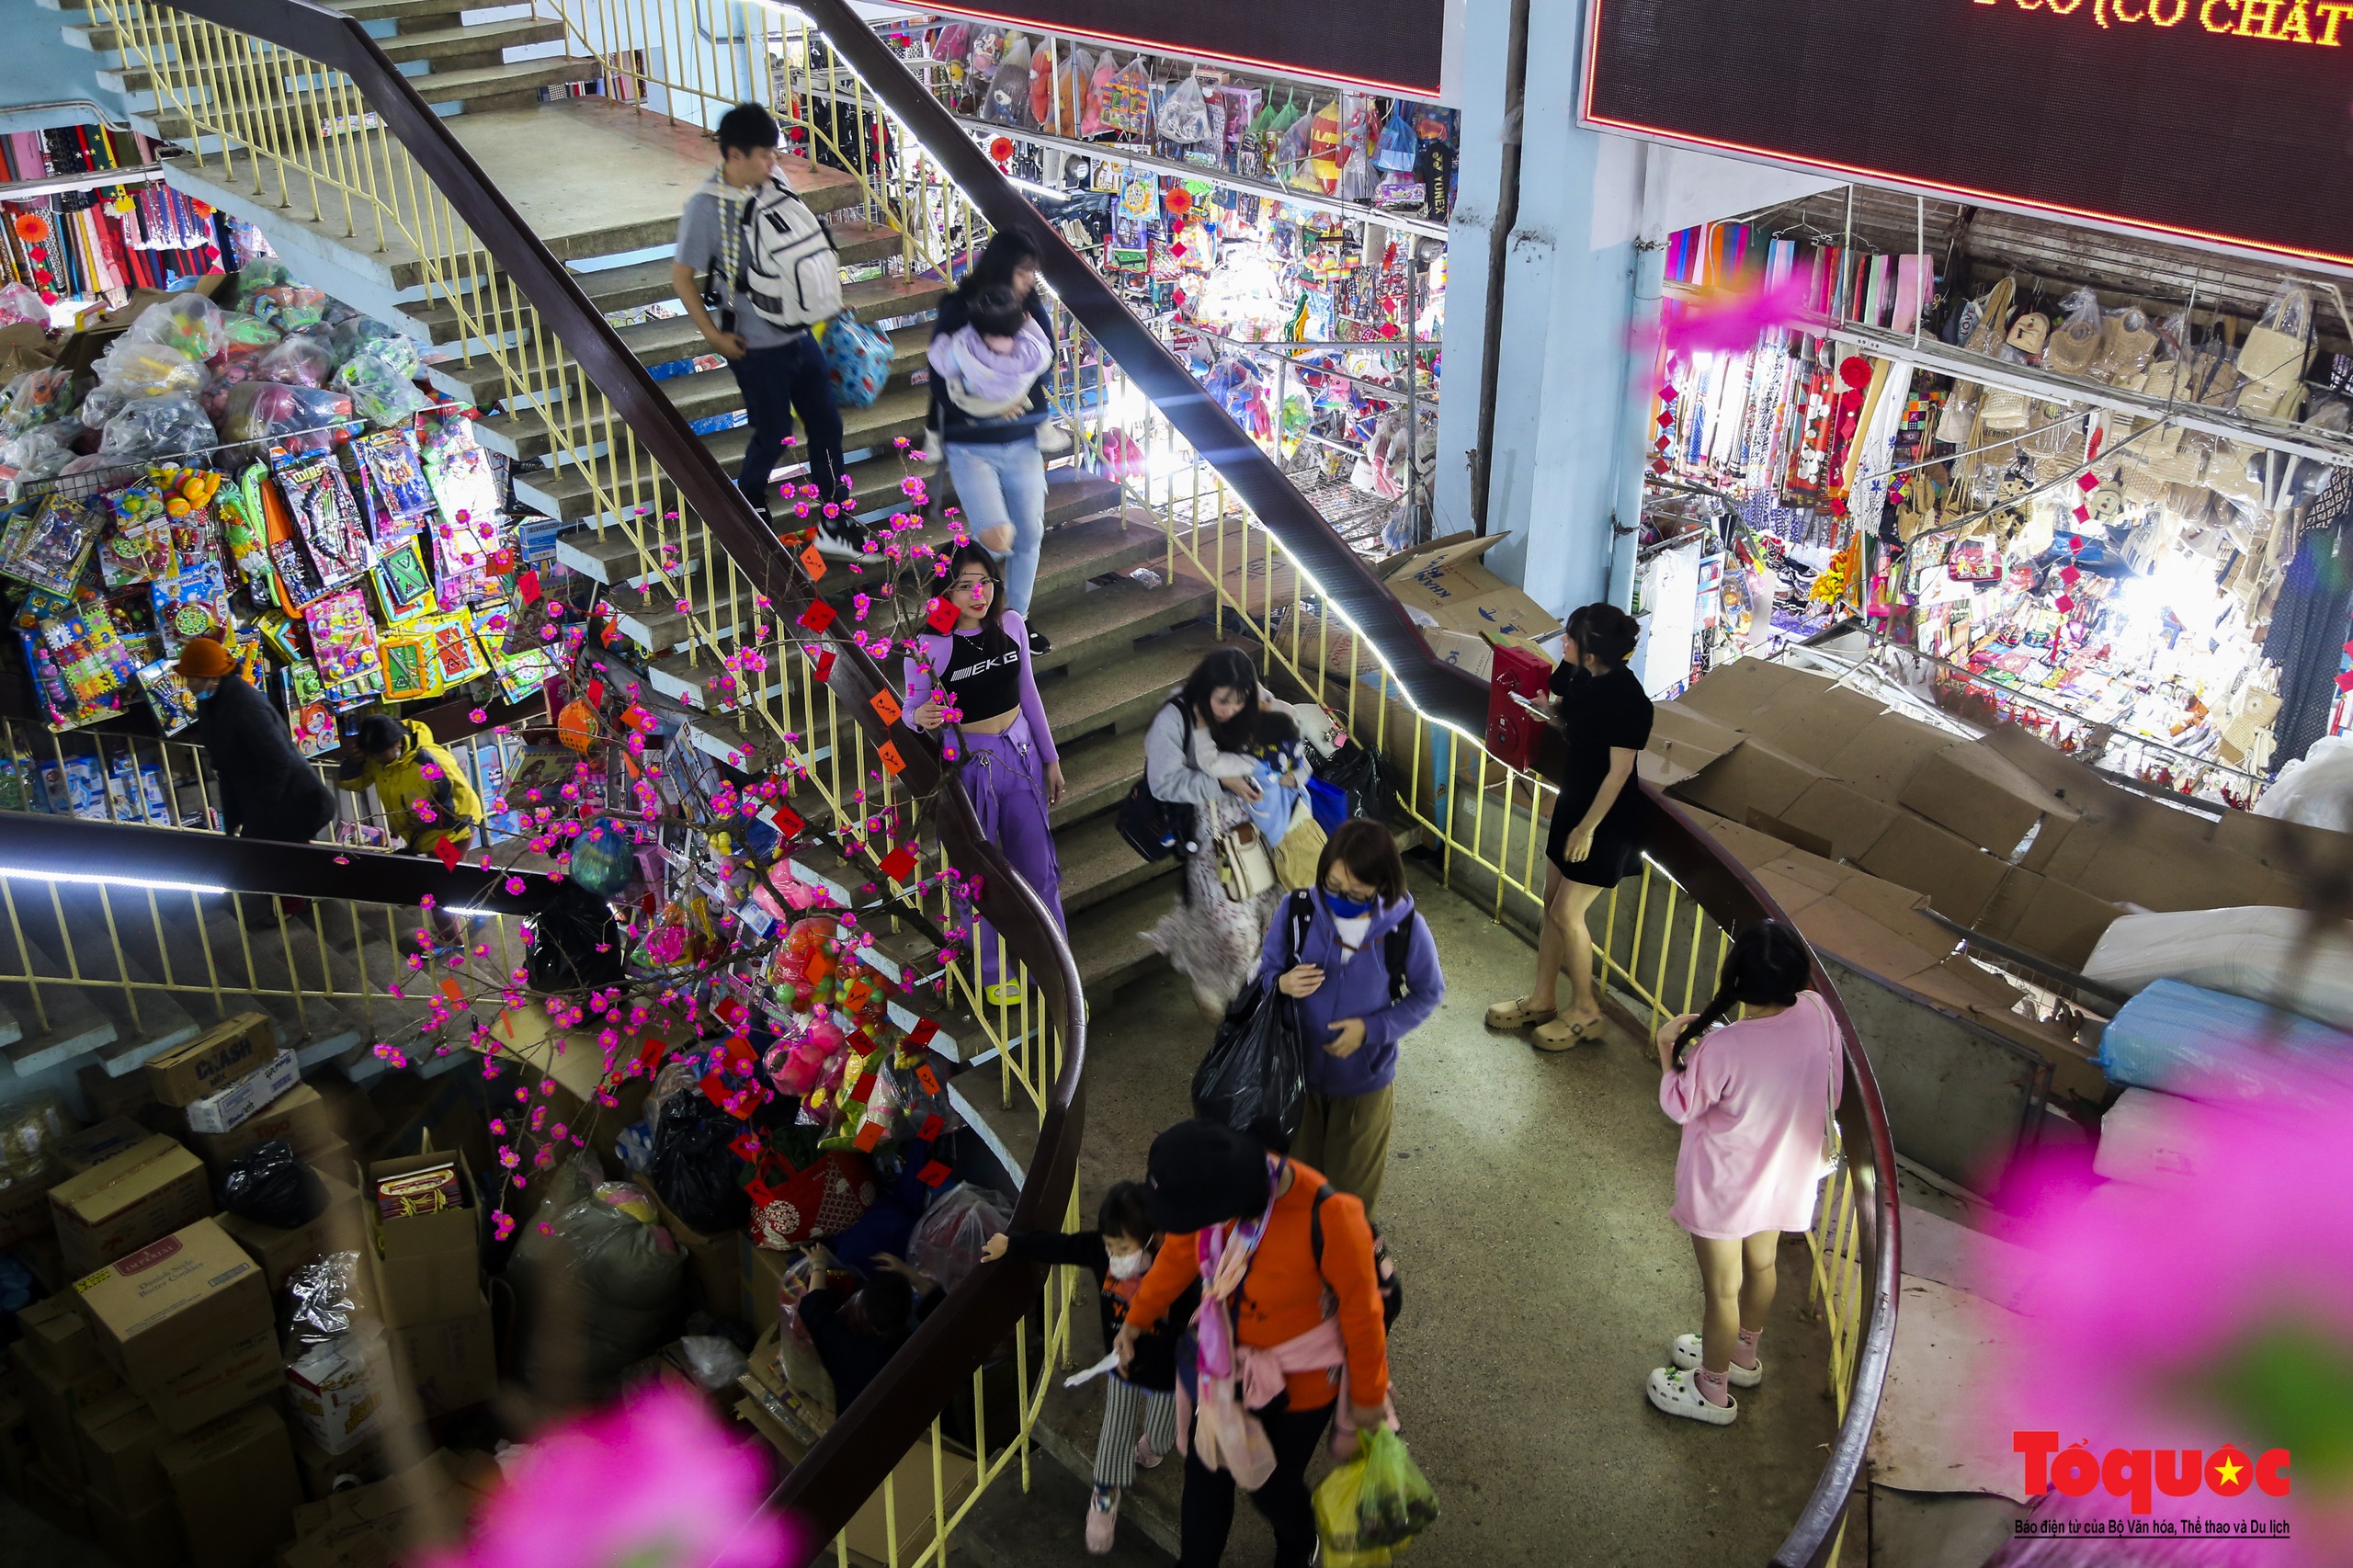 Hàng hóa Tết đa dạng, sức mua tại ngôi chợ nổi tiếng bậc nhất xứ Huế vẫn chưa cao - Ảnh 2.